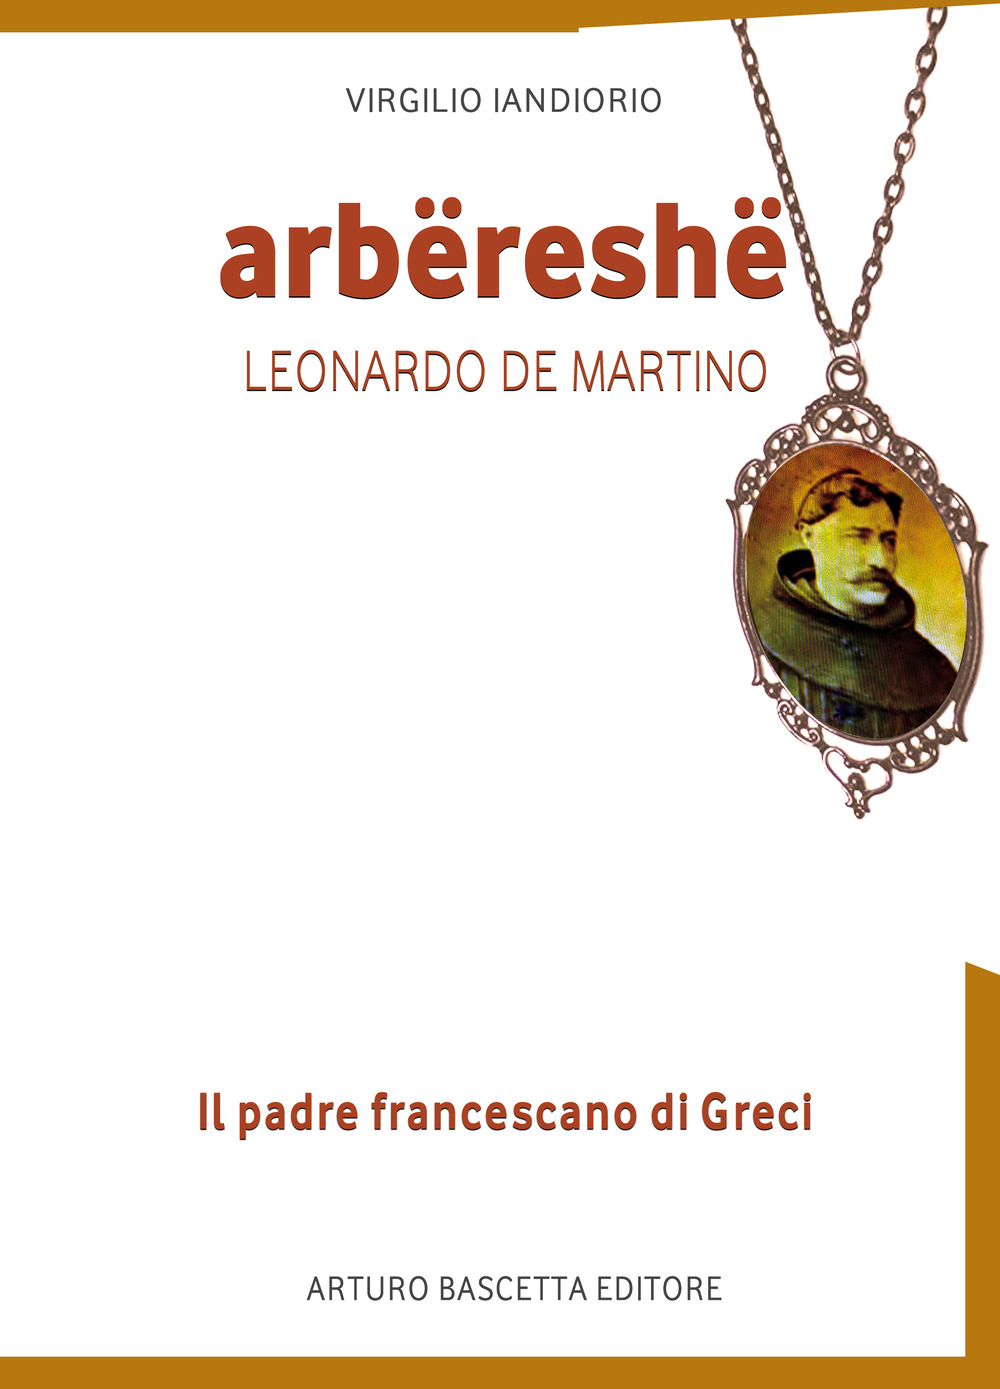 Arbereshe: Leonardo de Martino, il padre francescano di Greci